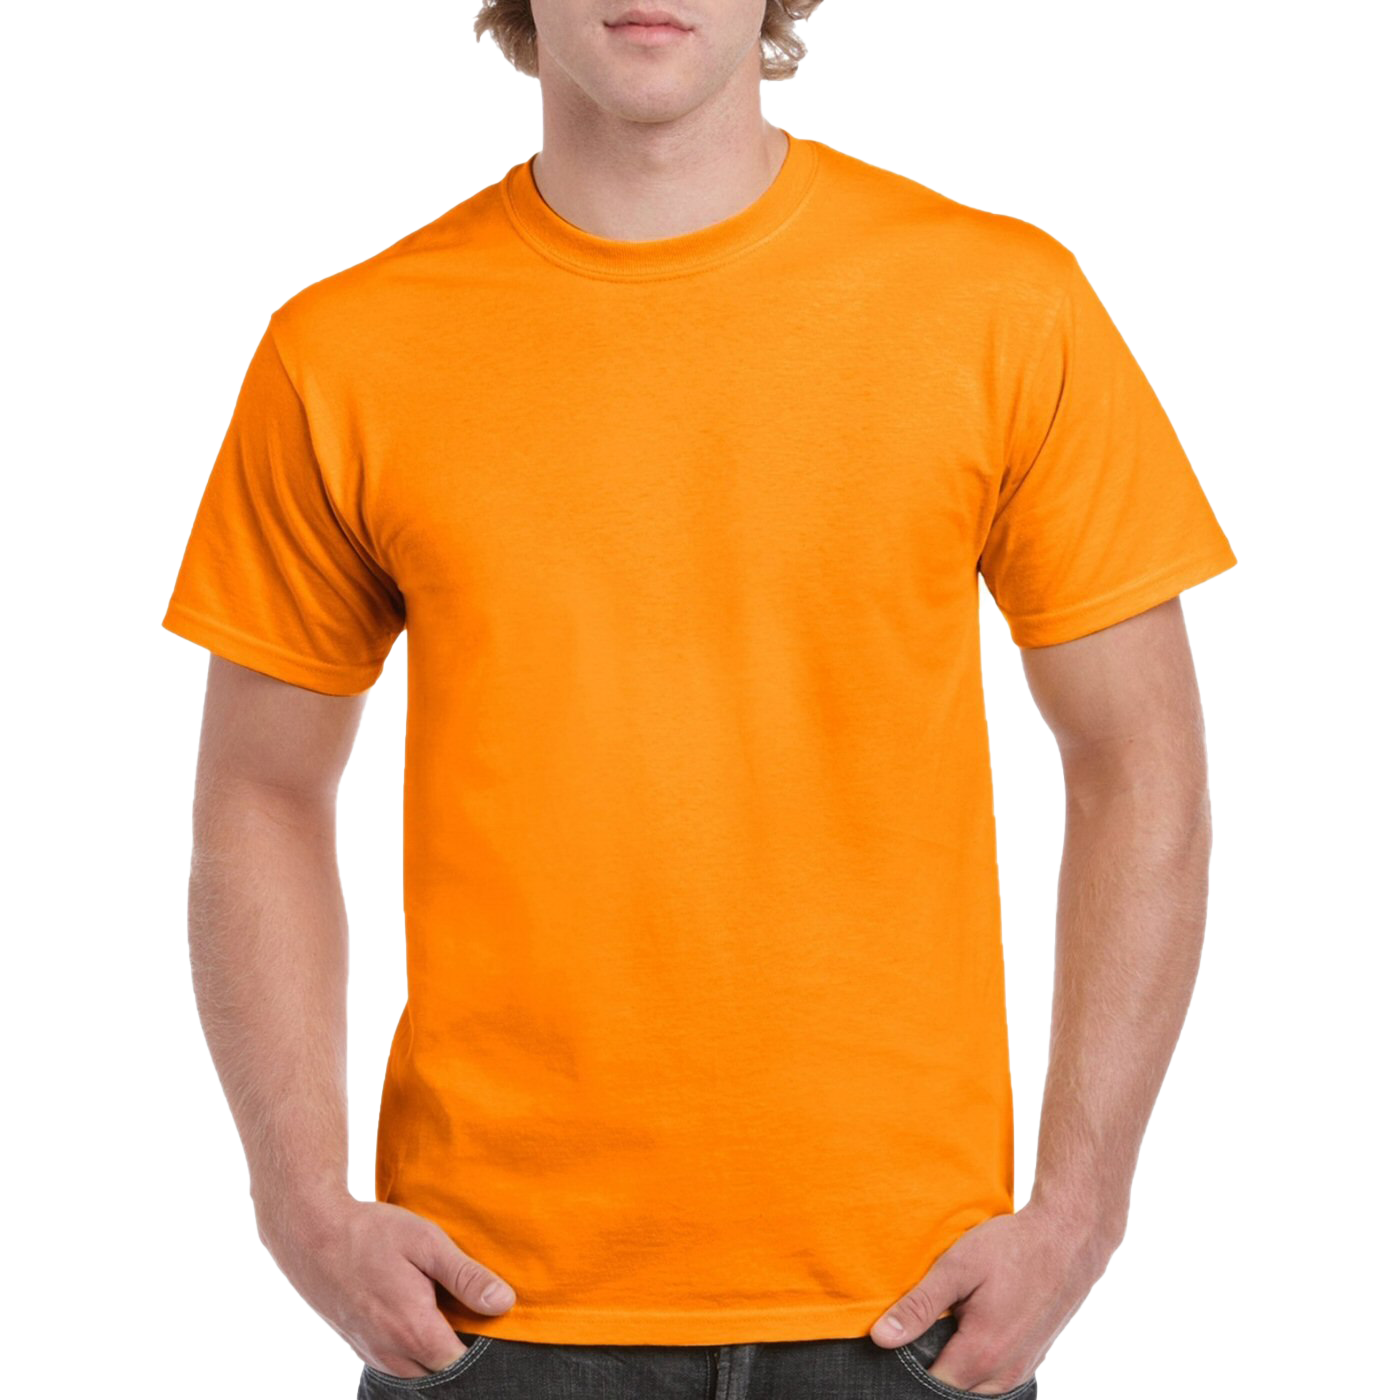 Camiseta naranja lisa PNG photo